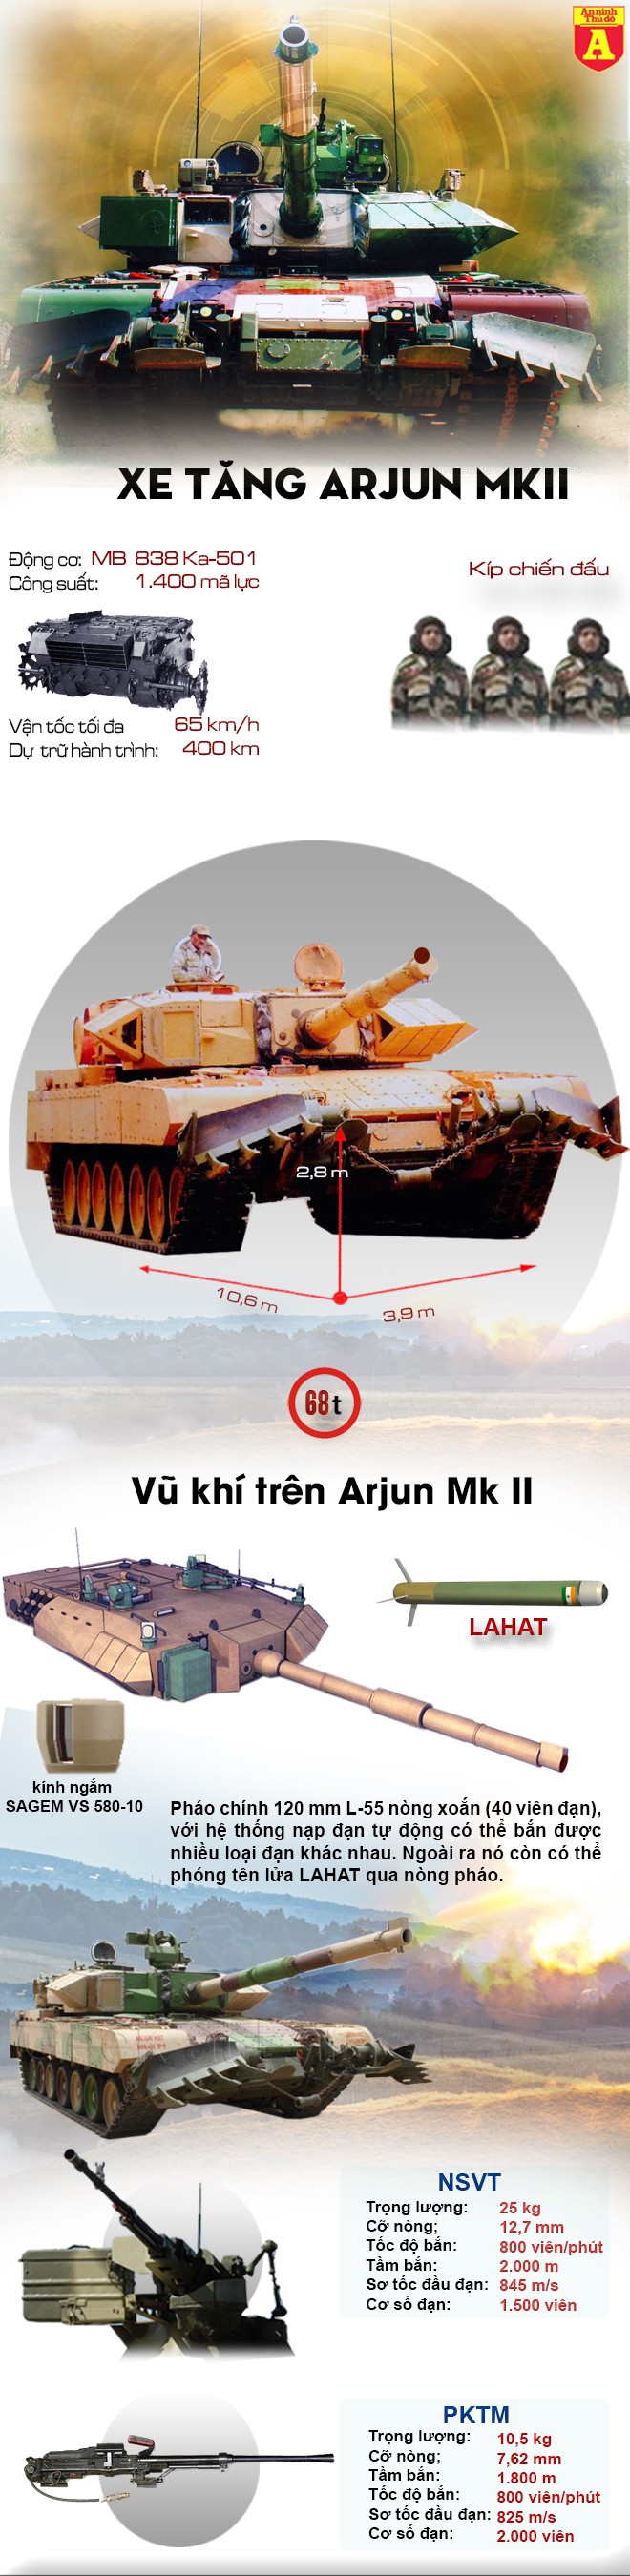 [Infographic] Ấn Độ đã hoàn thiện siêu tăng mạnh ngang ngửa T-90AM của Nga ảnh 2